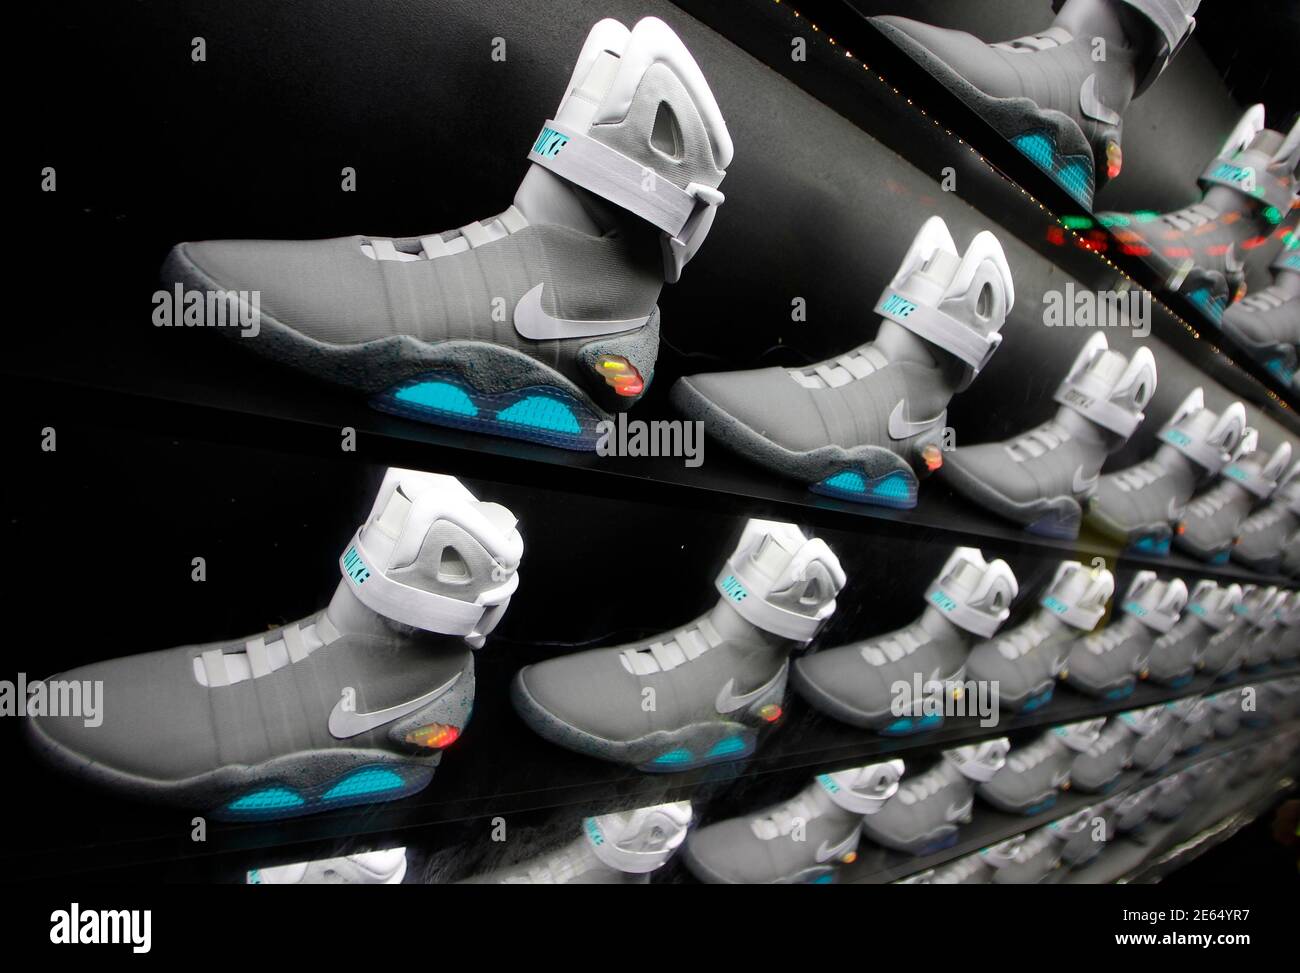 2011 las zapatillas NIKE MAG, basadas en LAS NIKE originales usadas en 2015 por el 'Back to the Future' Marty McFly, interpretado por Michael J. Fox, se durante su